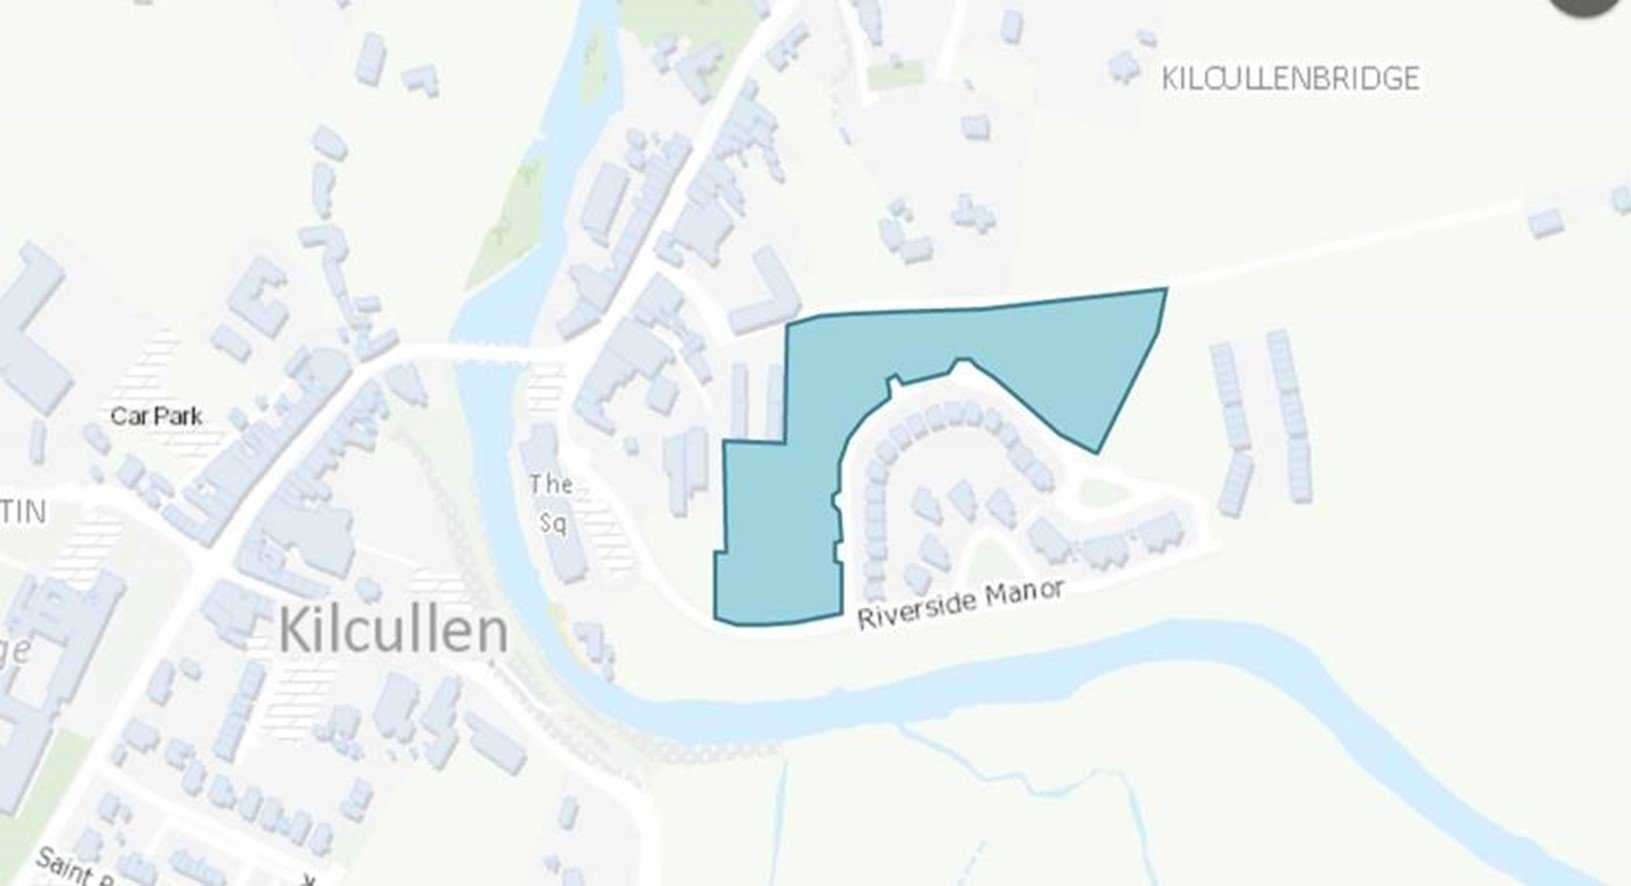 Riverside, Kilcullen - outline map.jpg